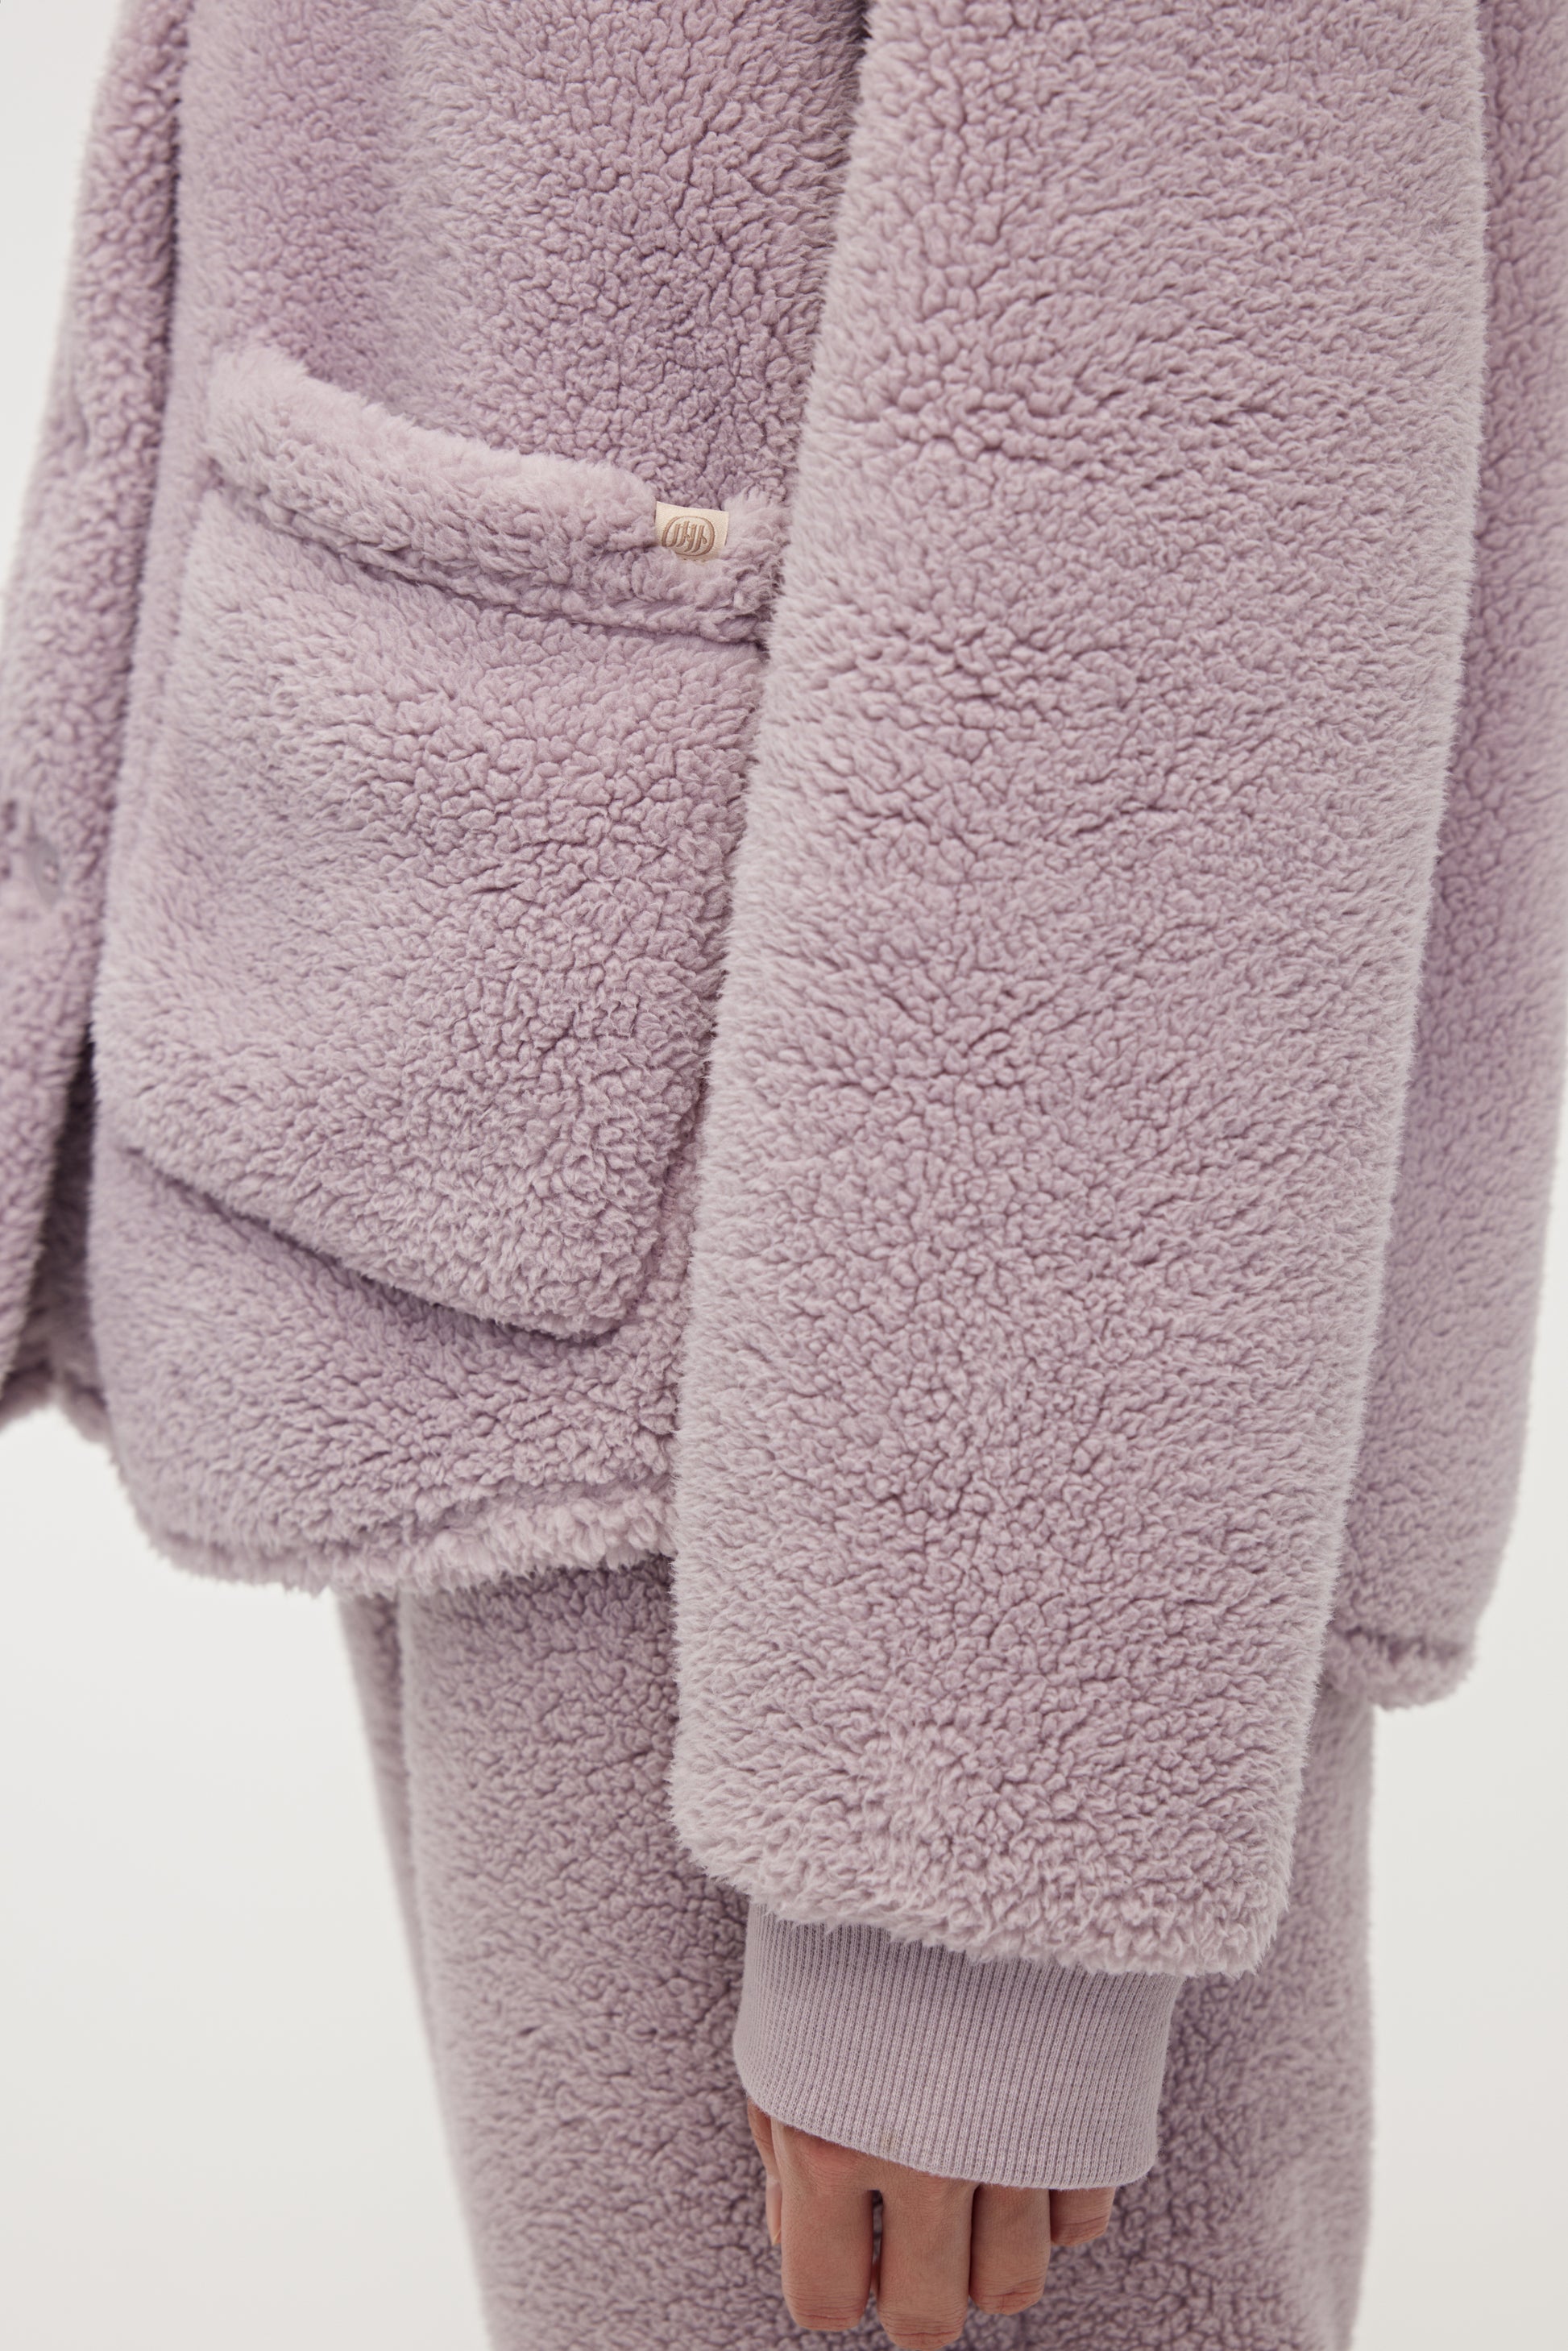 Details of purple Fleece Pajama Top